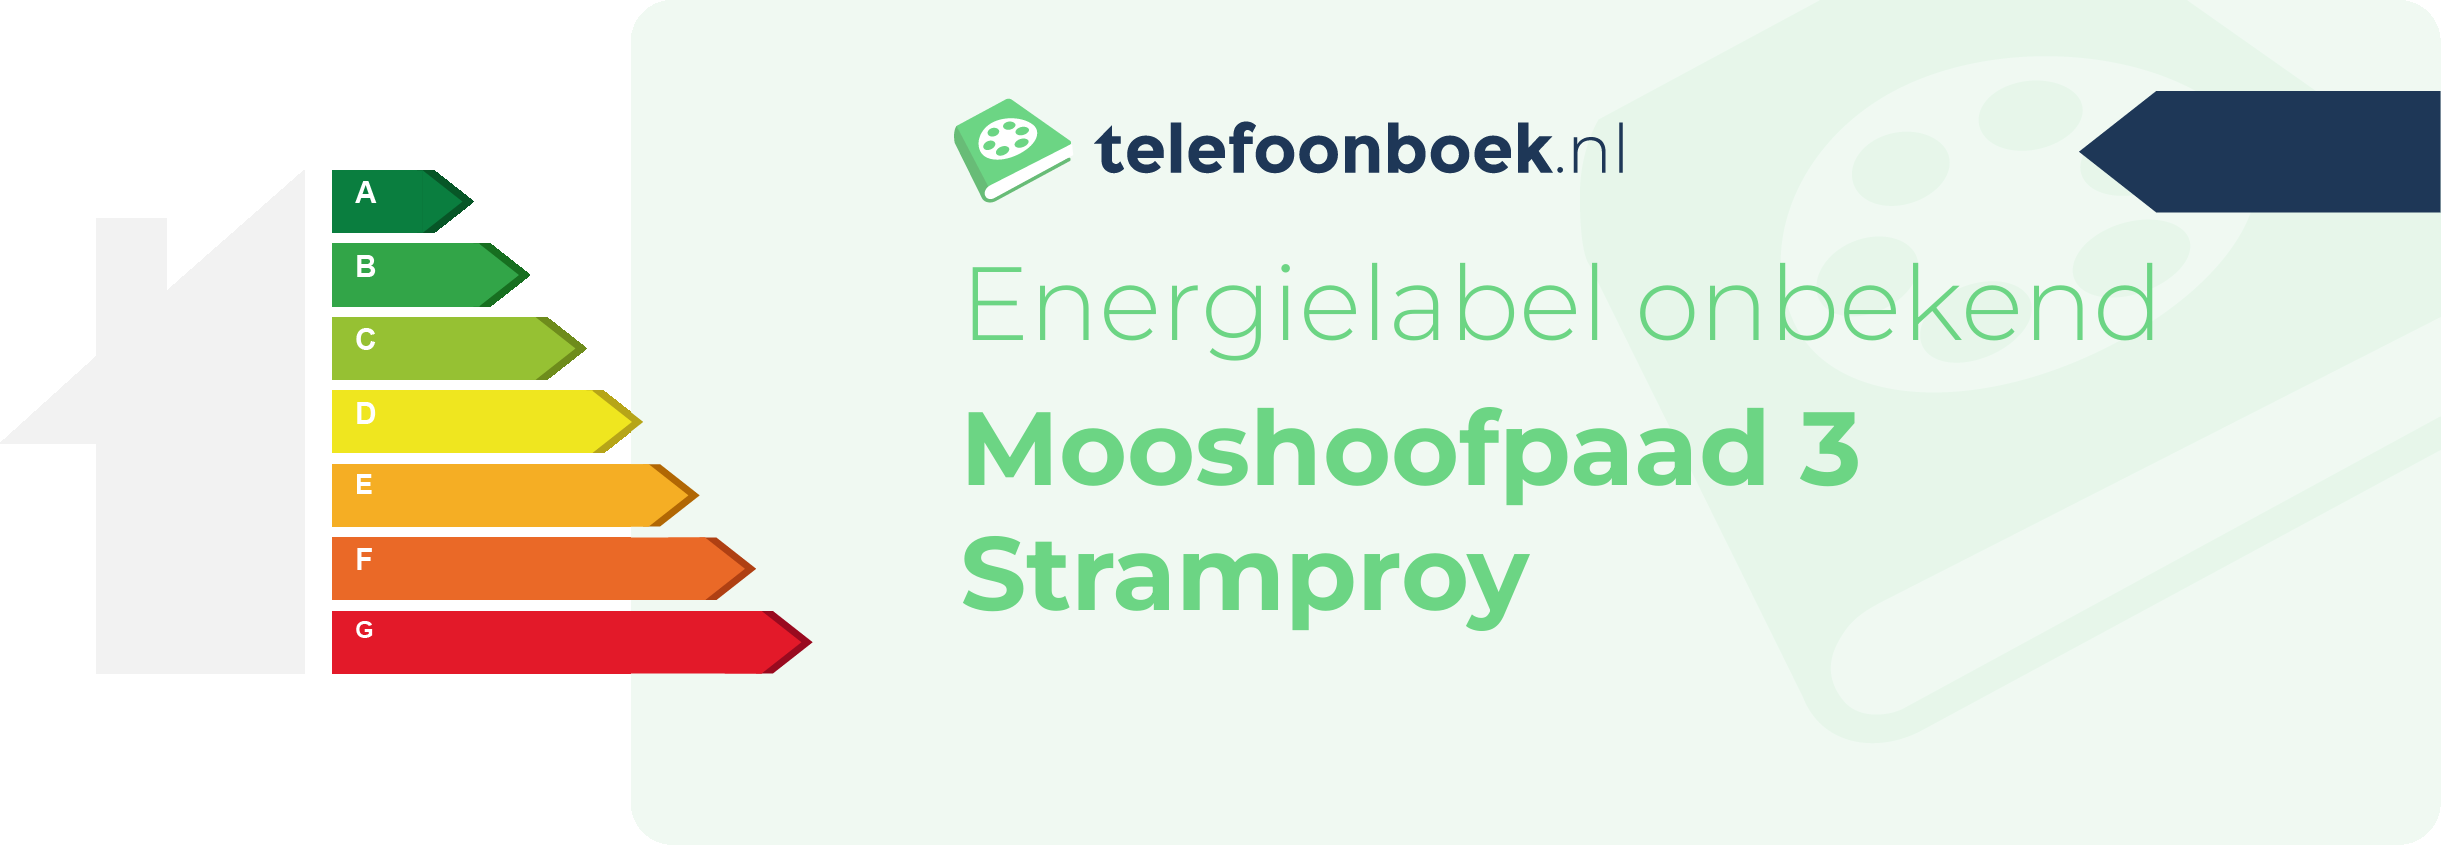 Energielabel Mooshoofpaad 3 Stramproy